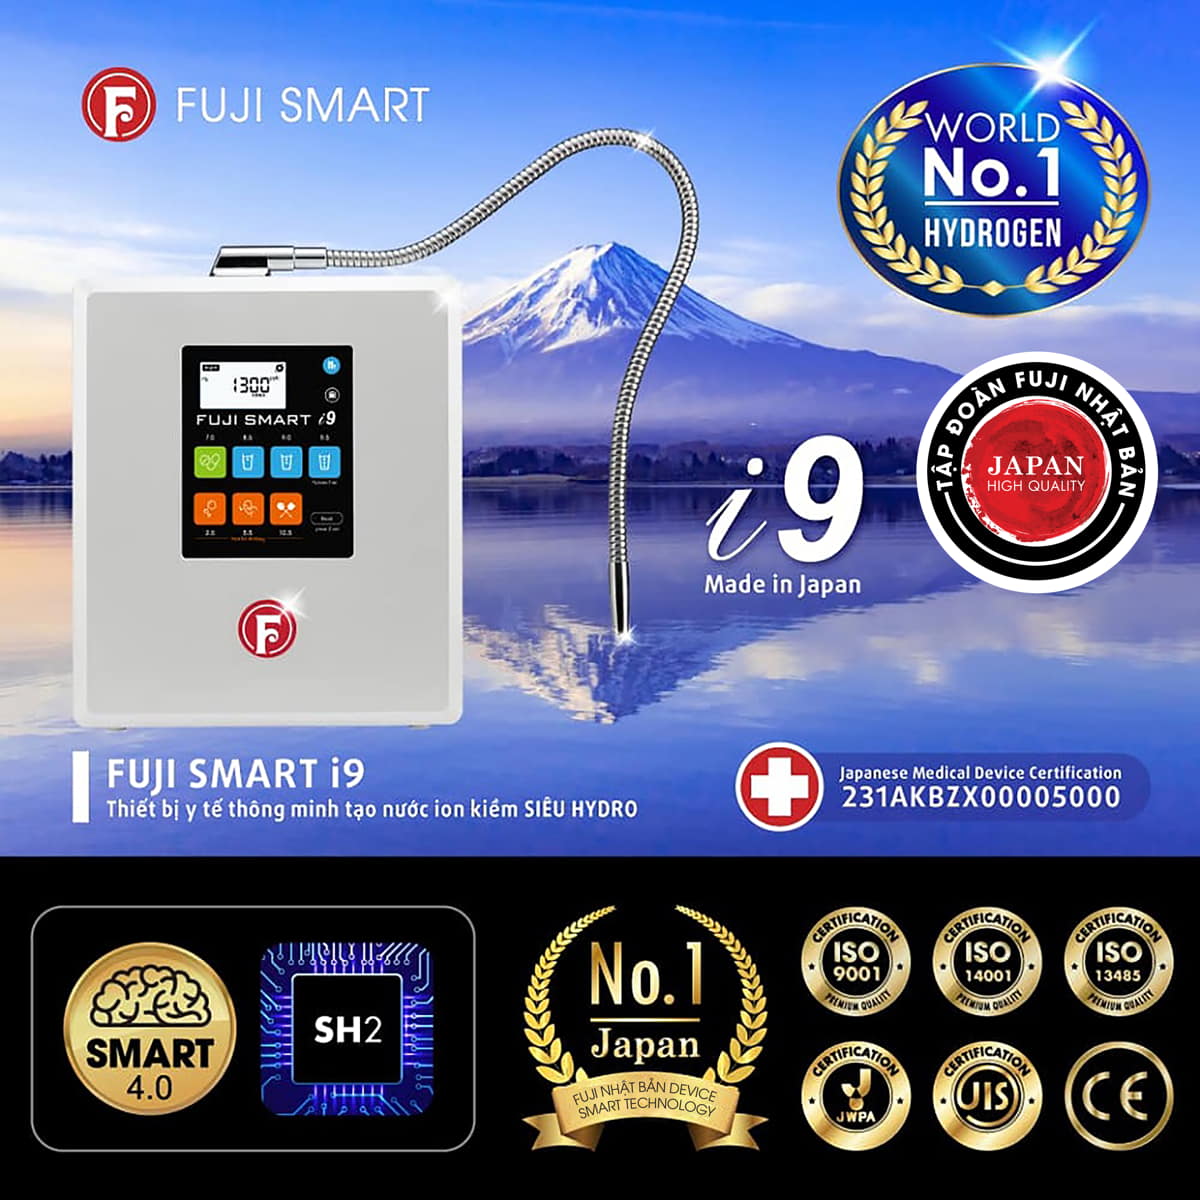 Máy lọc nước ion kiềm siêu hydro chuẩn thiết bị y tế Fuji Smart i9 có tuổi thọ đến trên 30 năm